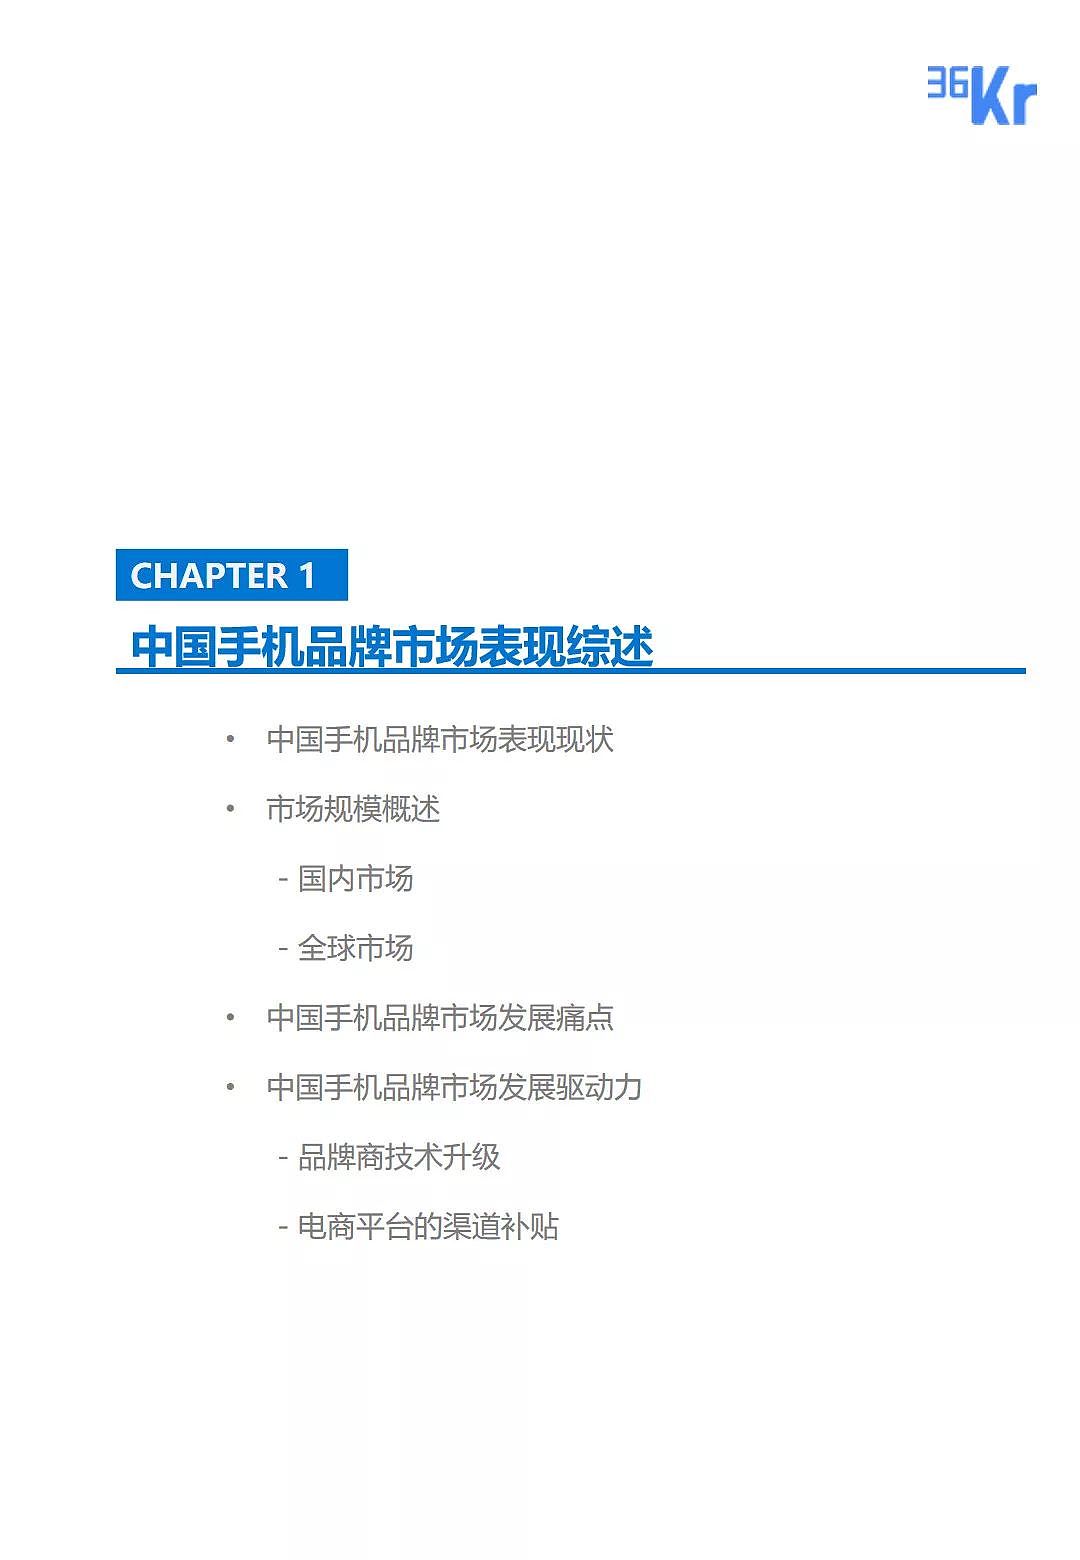 中国手机品牌市场营销研究报告 | 36氪研究 - 5